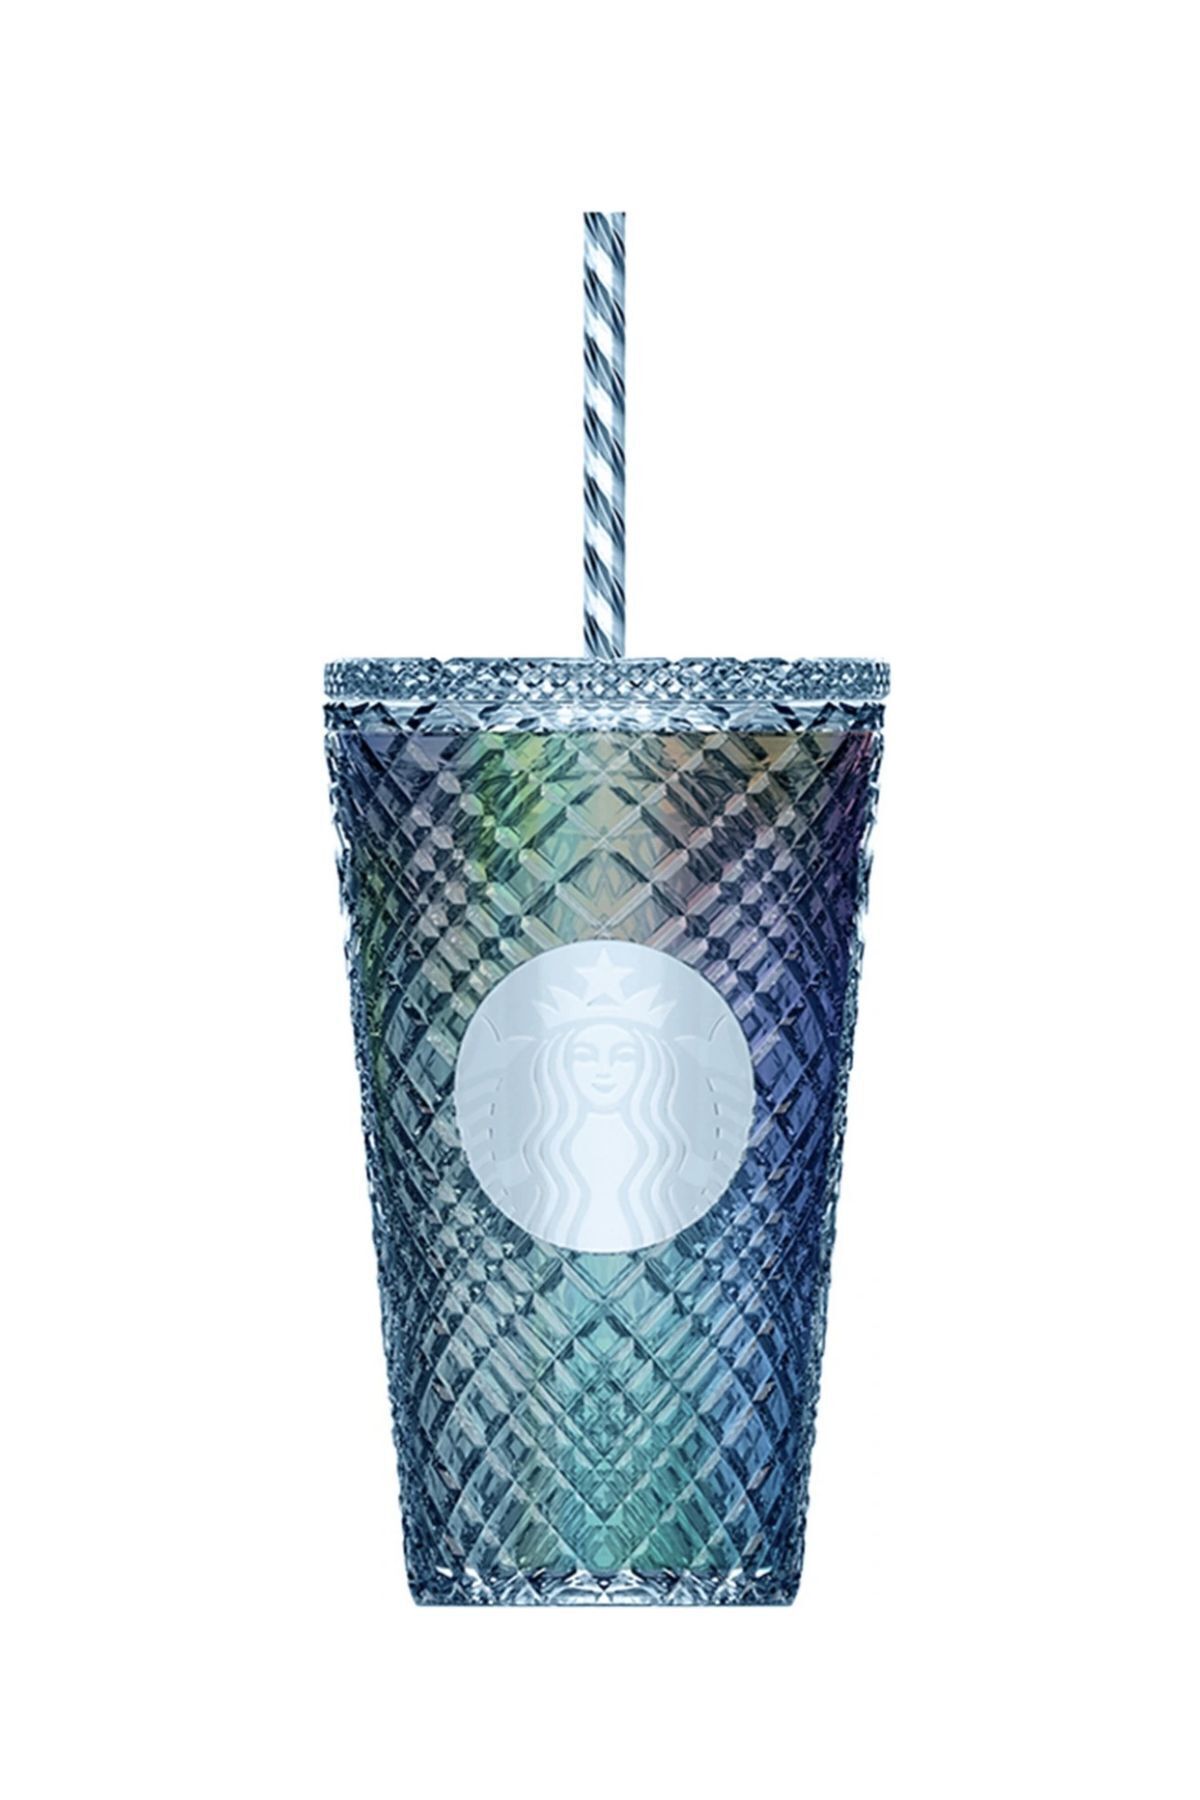 Starbucks ® Parlak Plastik Soğuk Içecek Bardağı - Mavi - 473 ml -